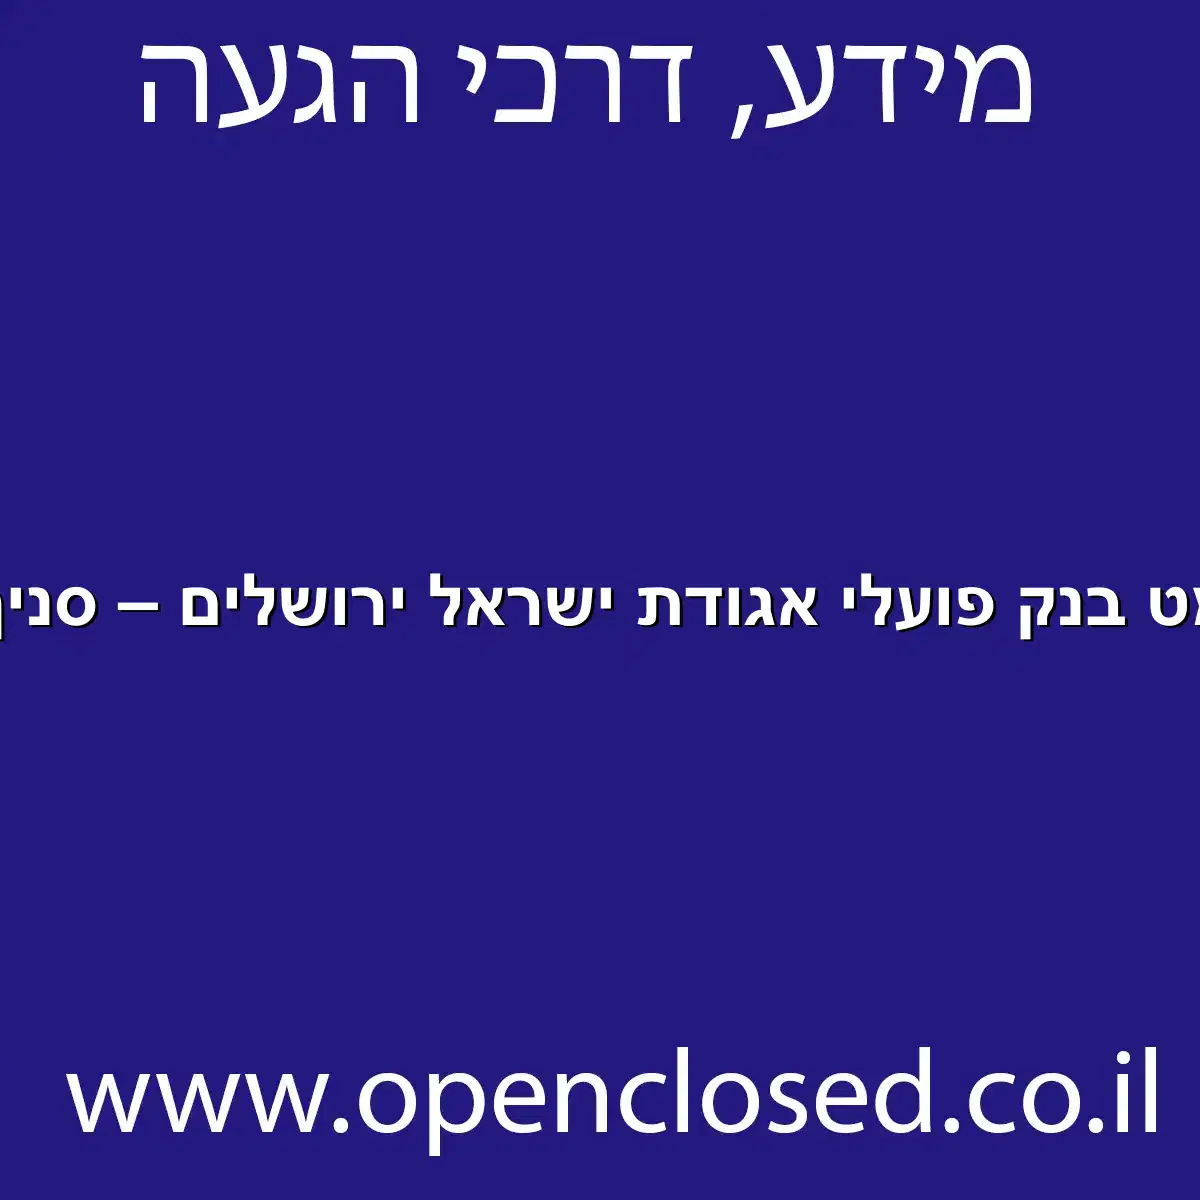 כספומט בנק פועלי אגודת ישראל ירושלים – סניף 172